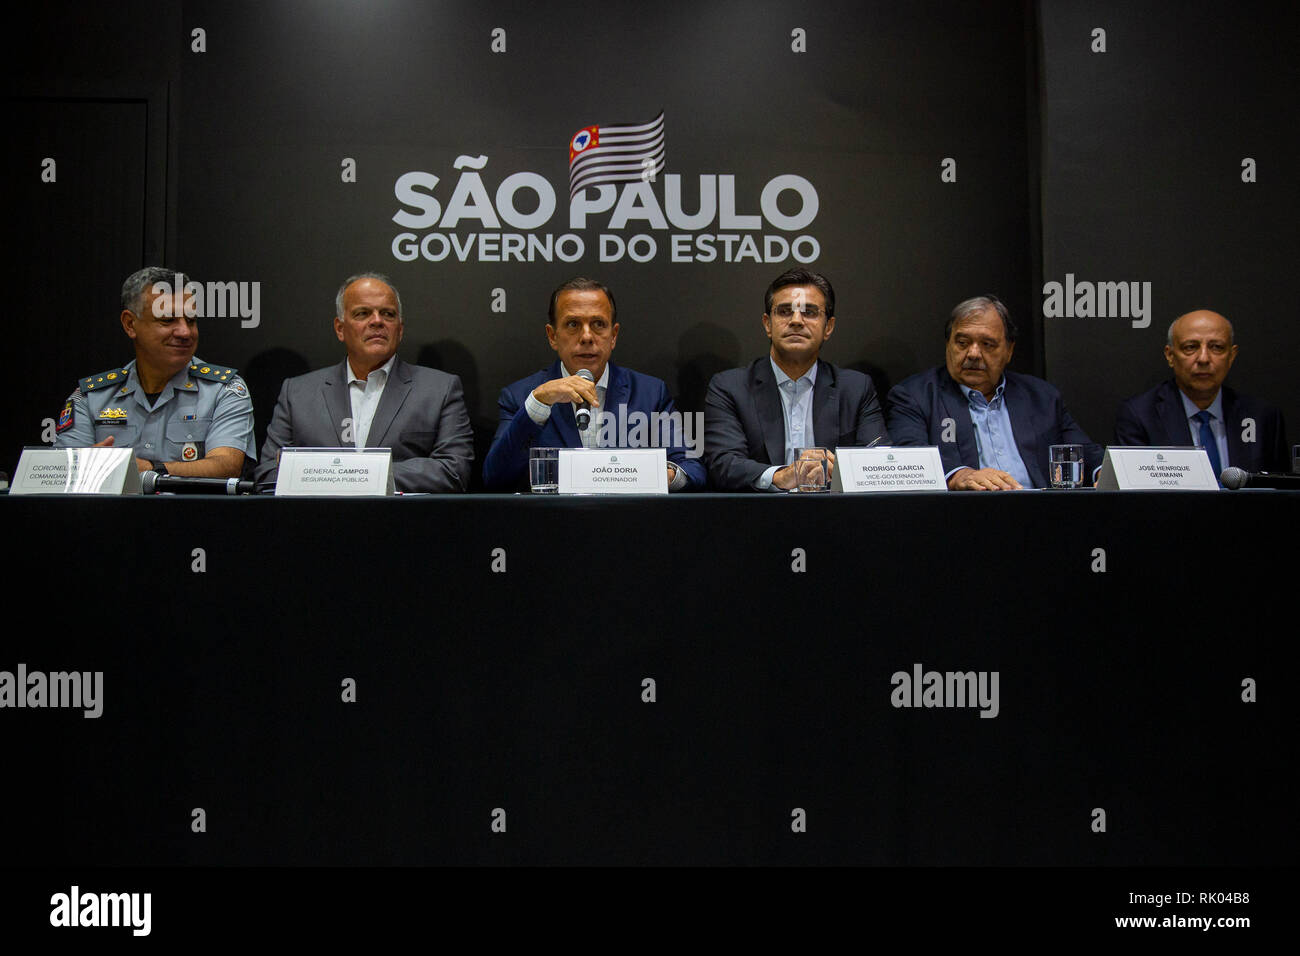 Sao Paulo - SP - 08/02/2019 - conférence de presse - Joao Doria Gouverneur Joao Doria convoque une conférence de presse en début d'après-midi du vendredi 08, de réunir les mesures dans le domaine de la sécurité publique. Photo : Suamy Beydoun / AGIF Banque D'Images